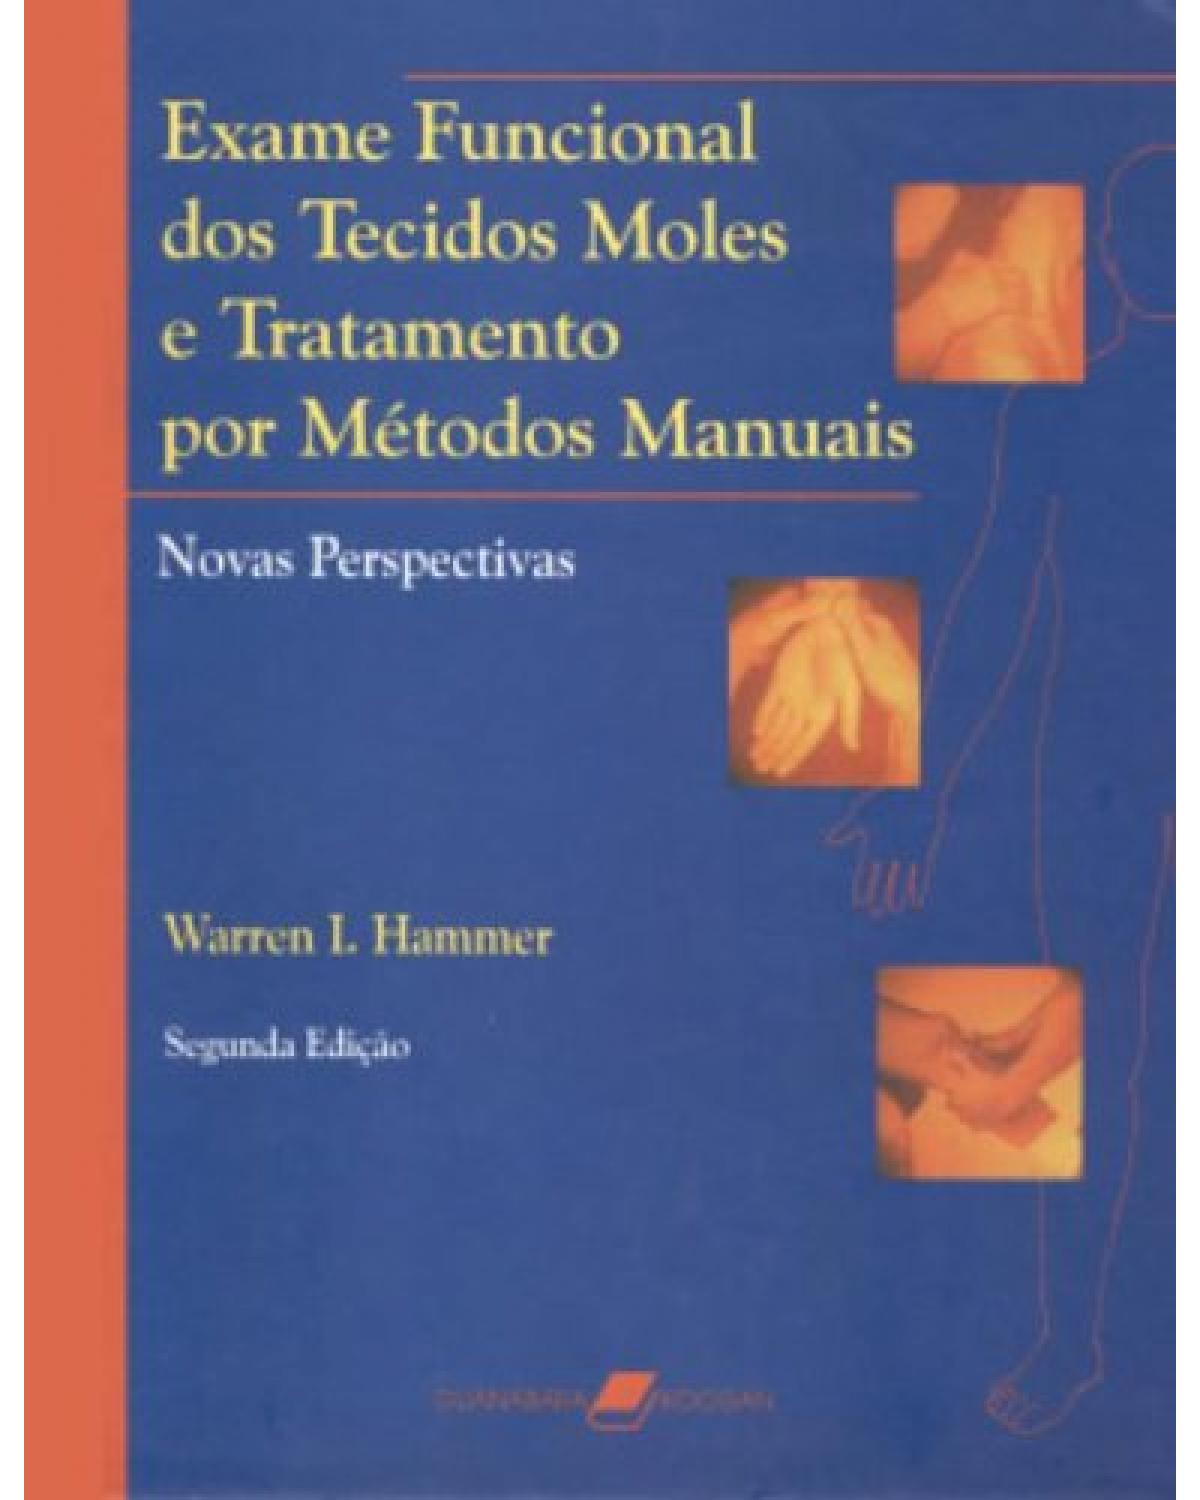 Exame funcional dos tecidos moles e tratamento por métodos manuais - Novas perspectivas - 2ª Edição | 2003